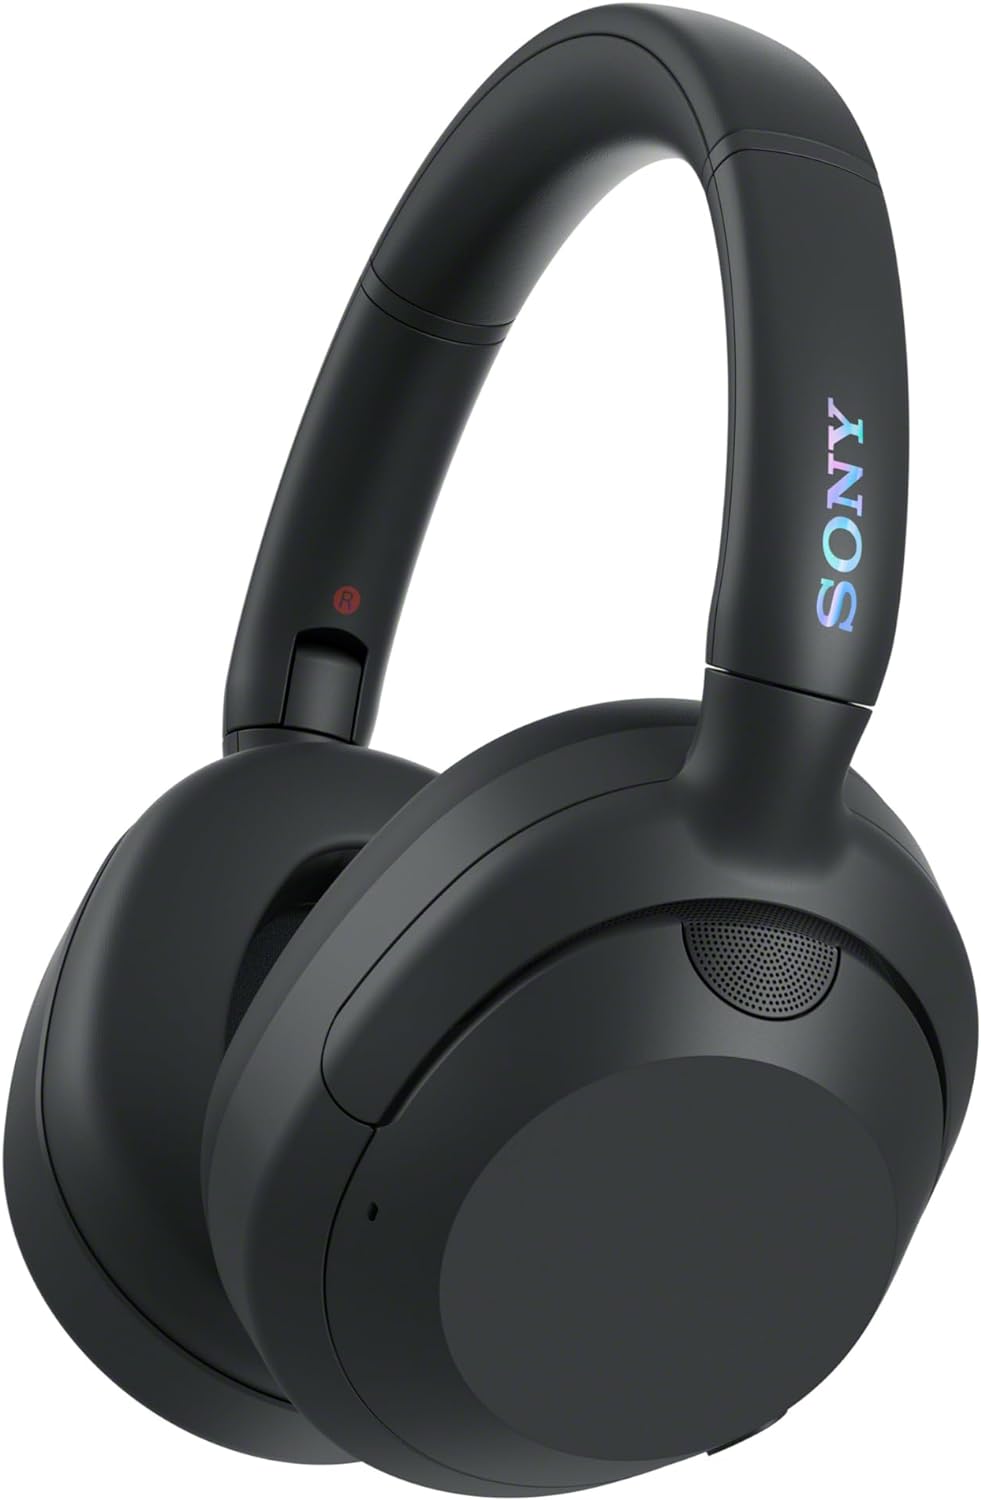 Sony ULT Wear Kopfhörer mit 30h Akku, Noise Cancelling & Multipoint bei Amazon zum neuen Bestpreis